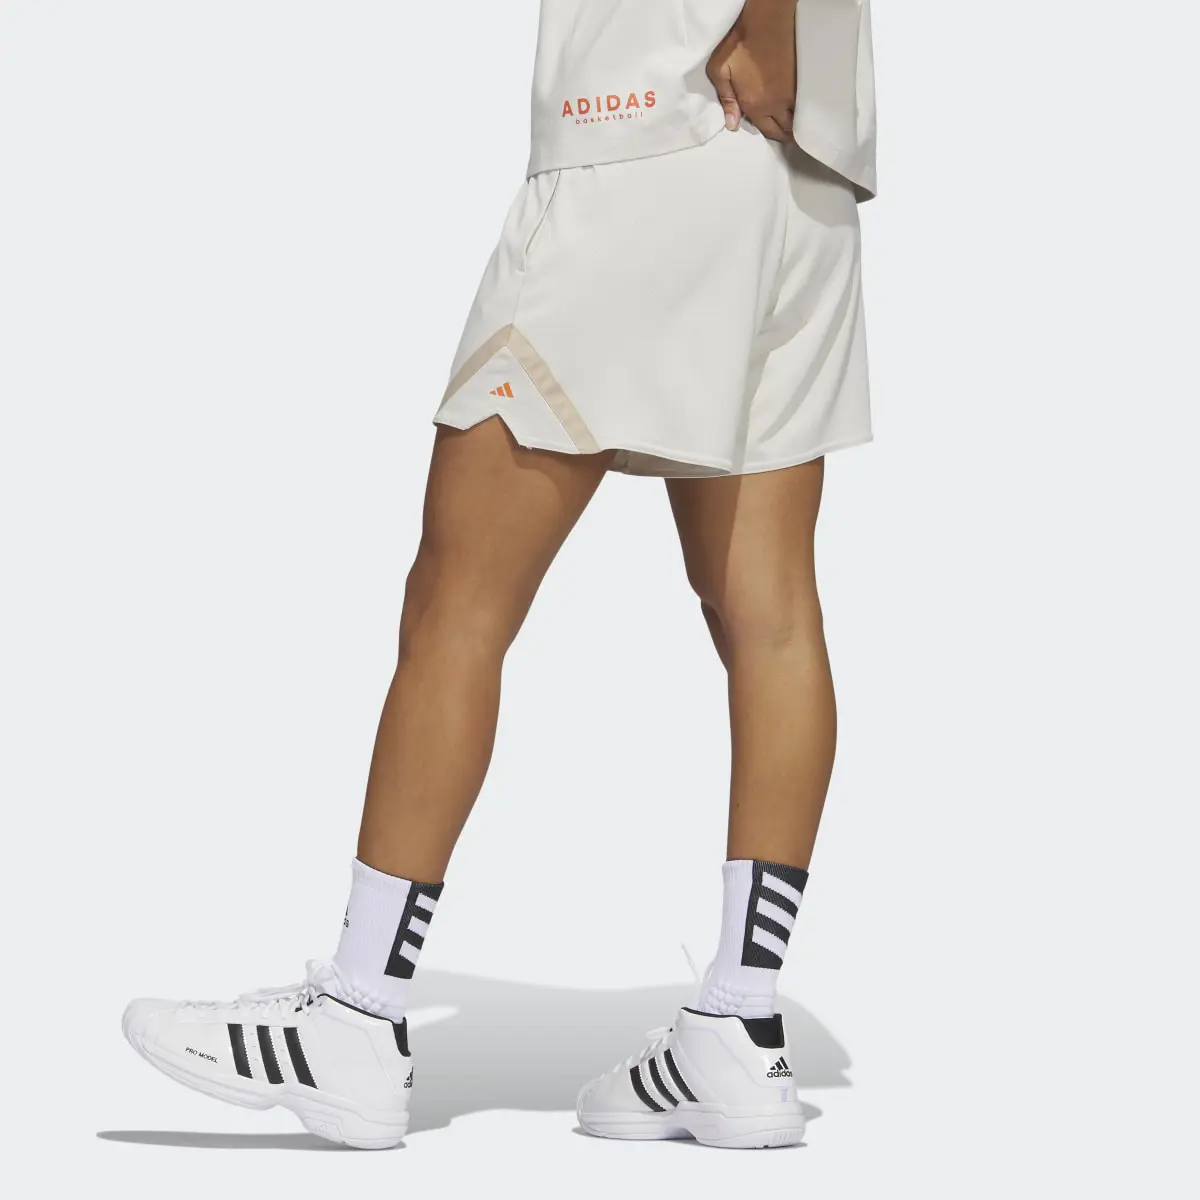 Adidas Select Basketball Shorts. 2